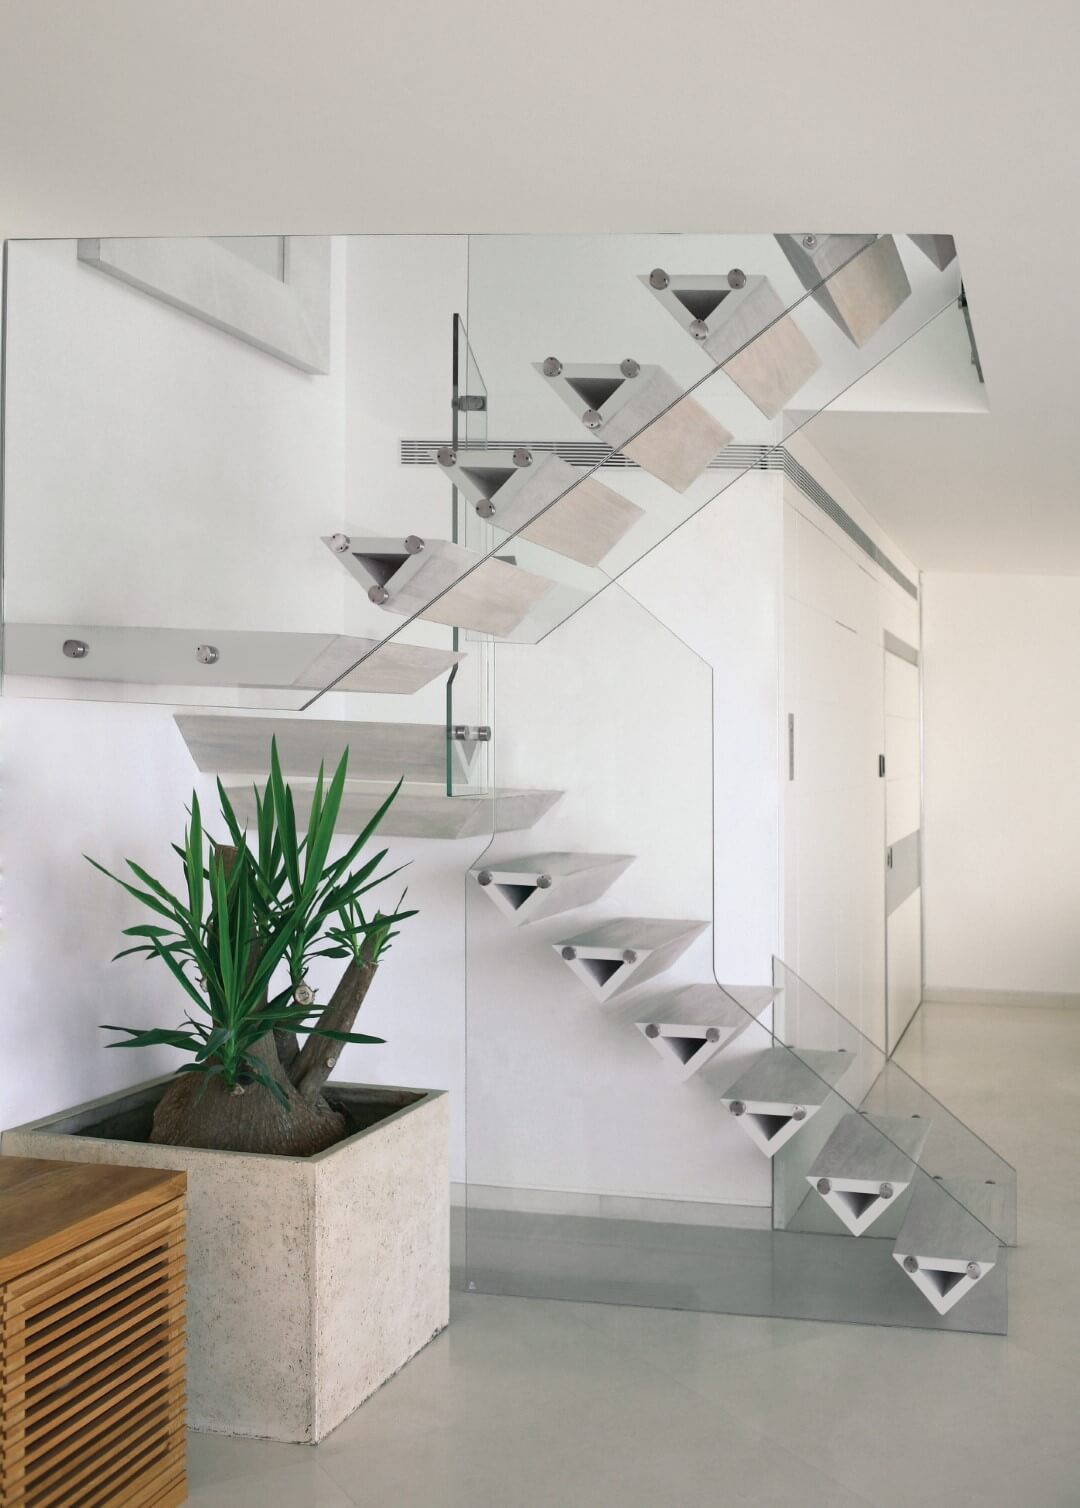 מדרגות עץ האלון כאילו תלויות באוויר בין שני מעקי זכוכית